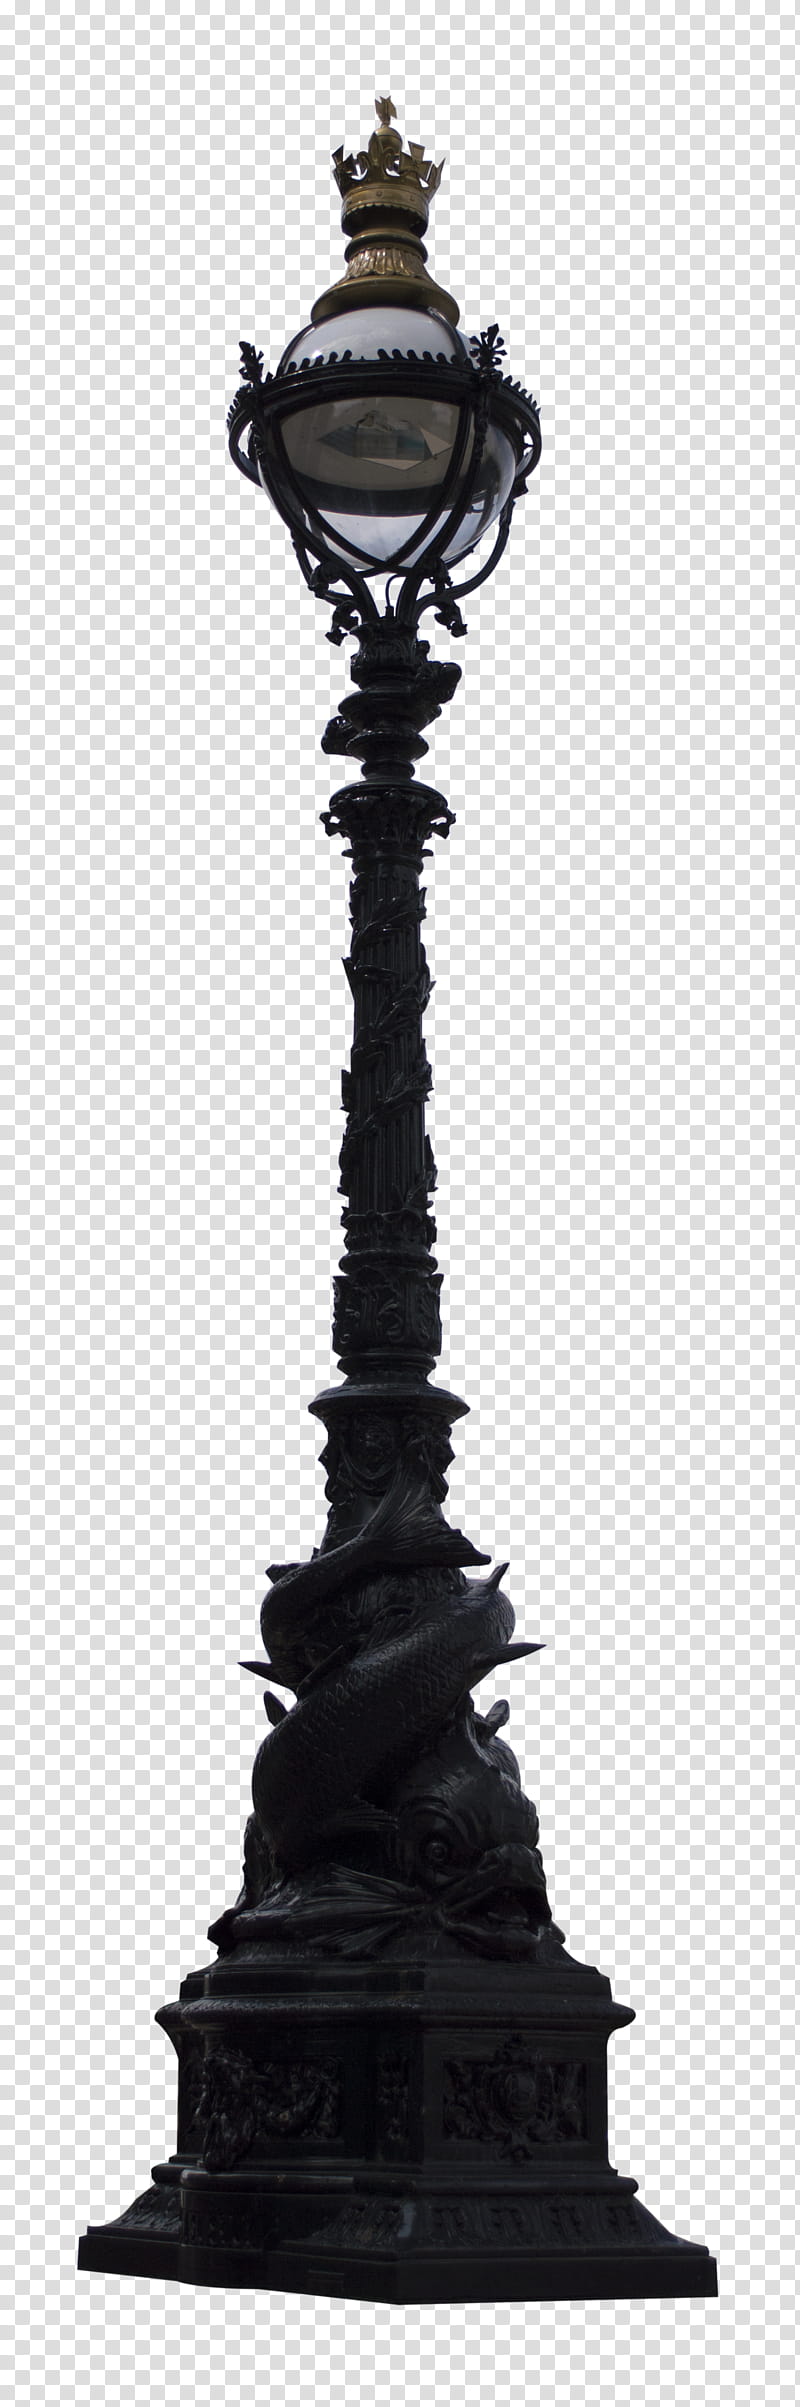 Lamp, black pedestal landmark transparent background PNG clipart